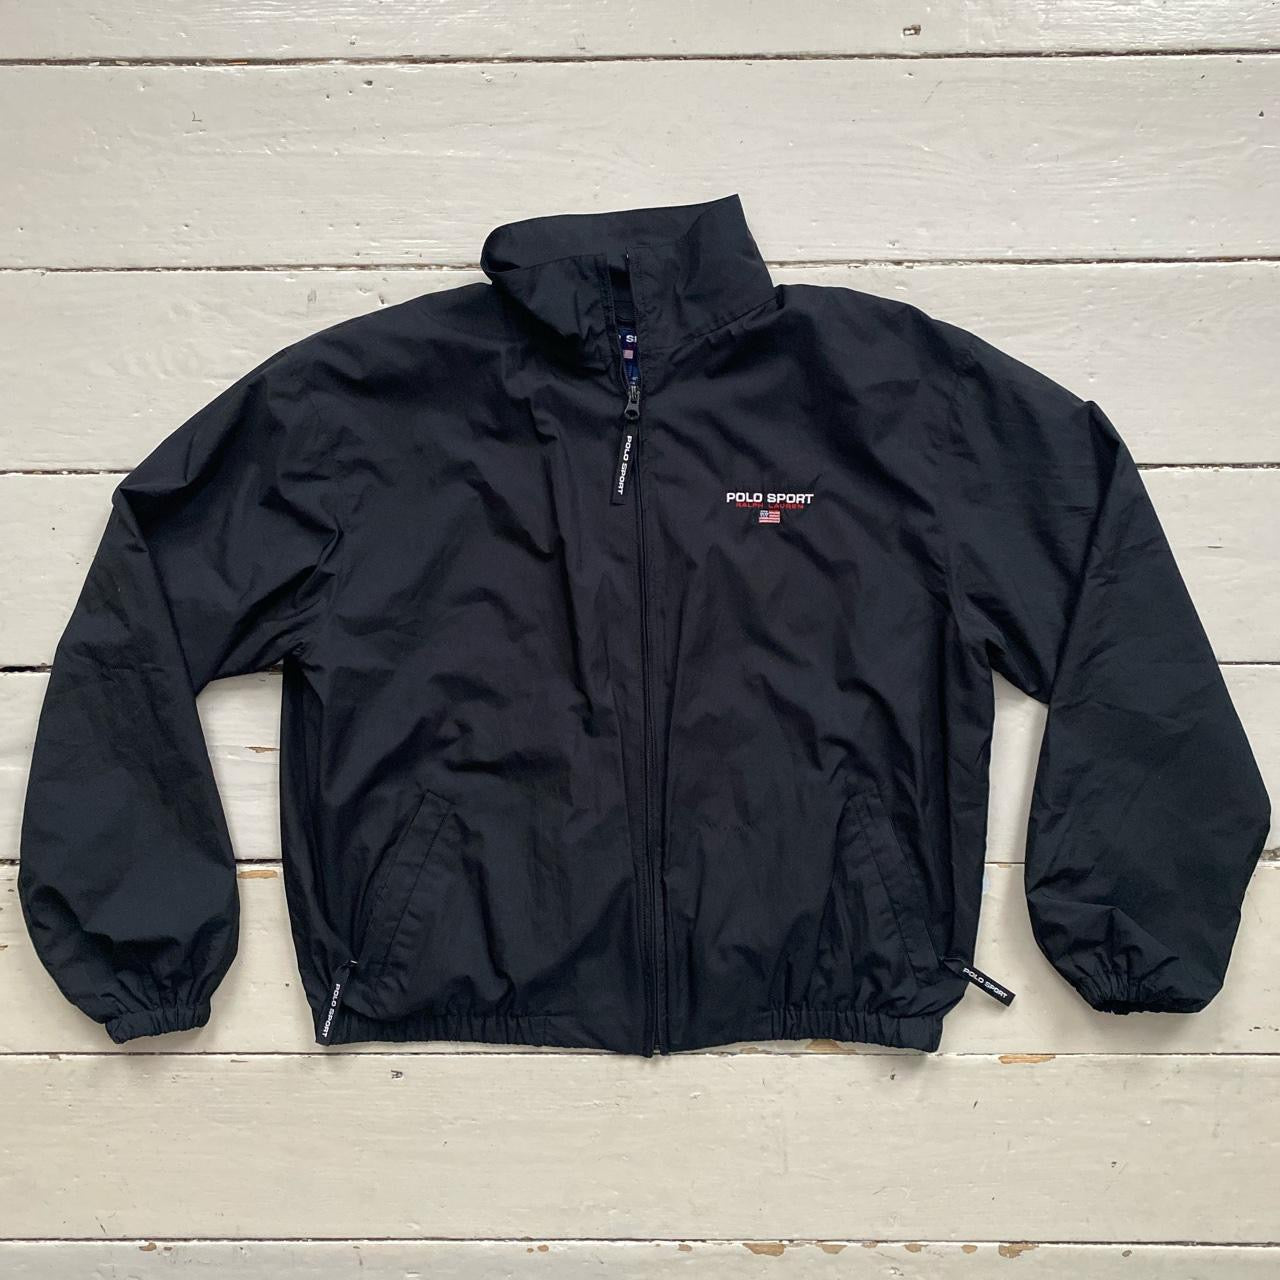 Polo Sport Black Jacket (Large)